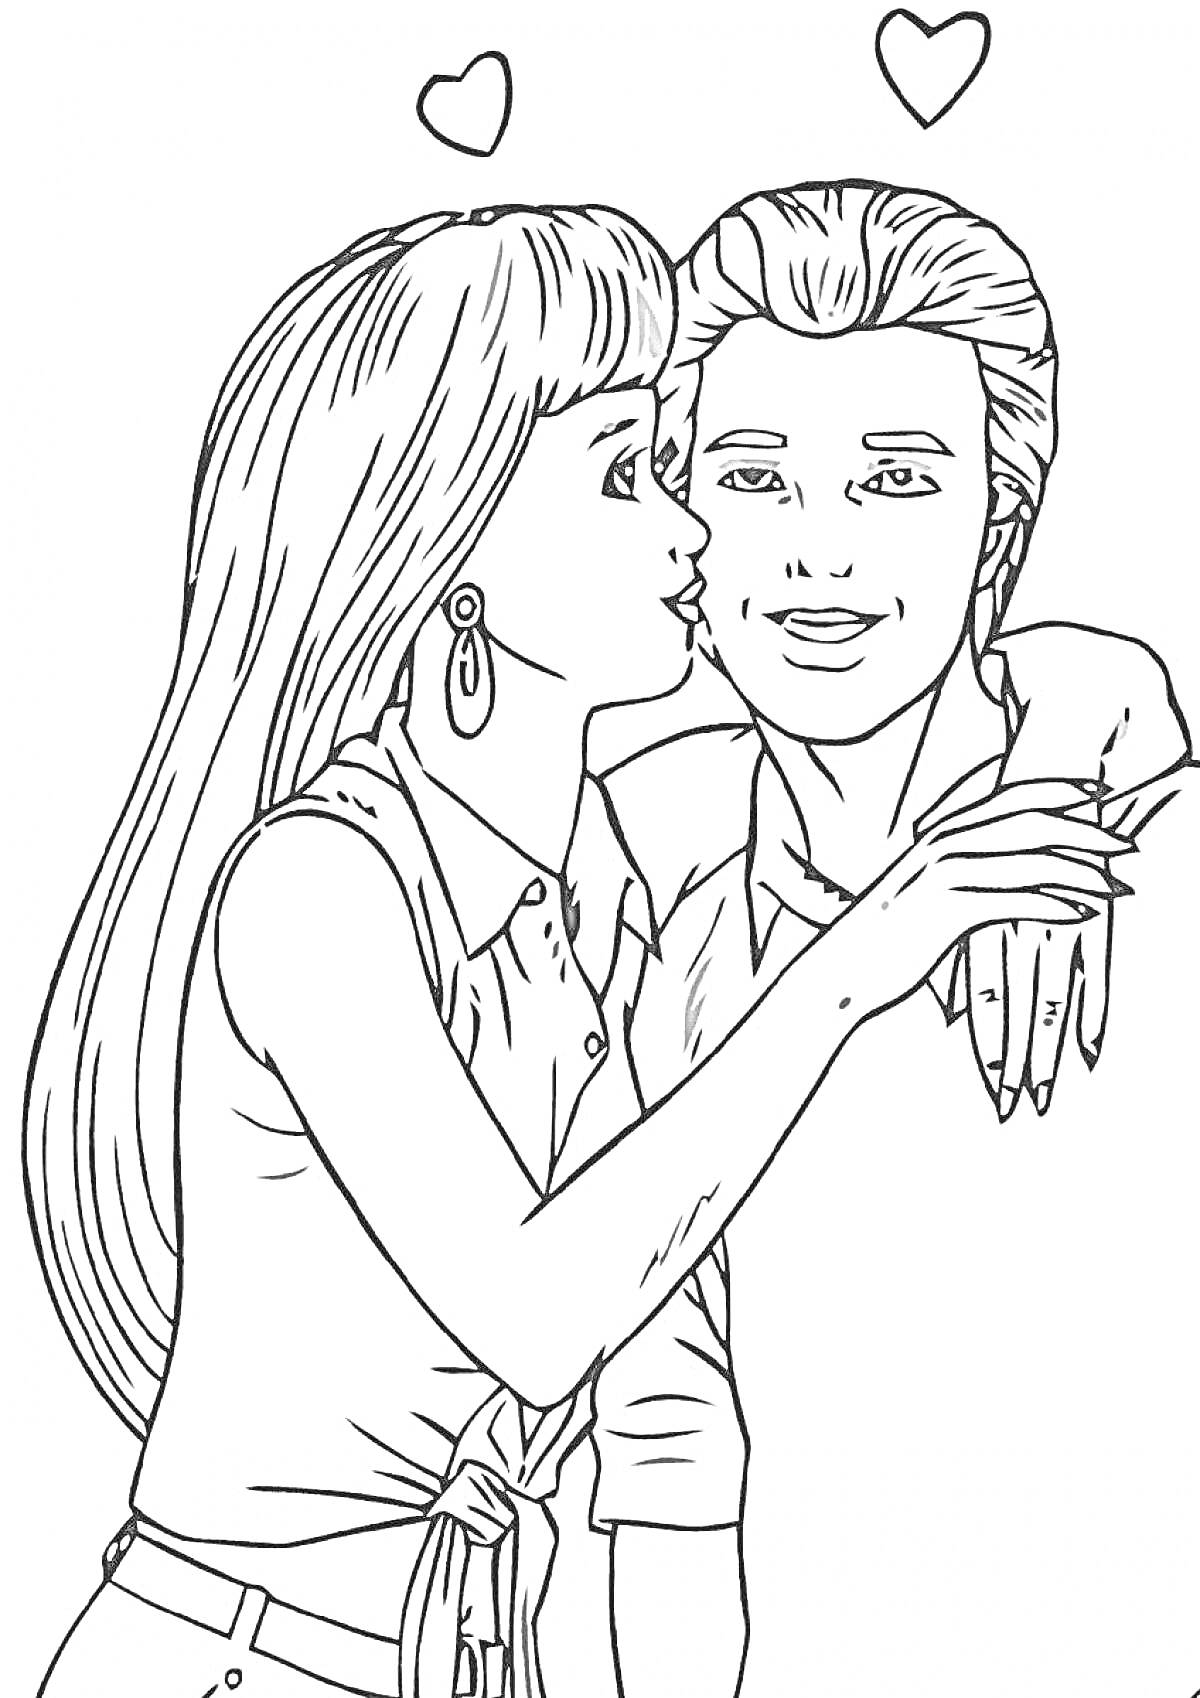 Барби целует Кена с сердечками на фоне